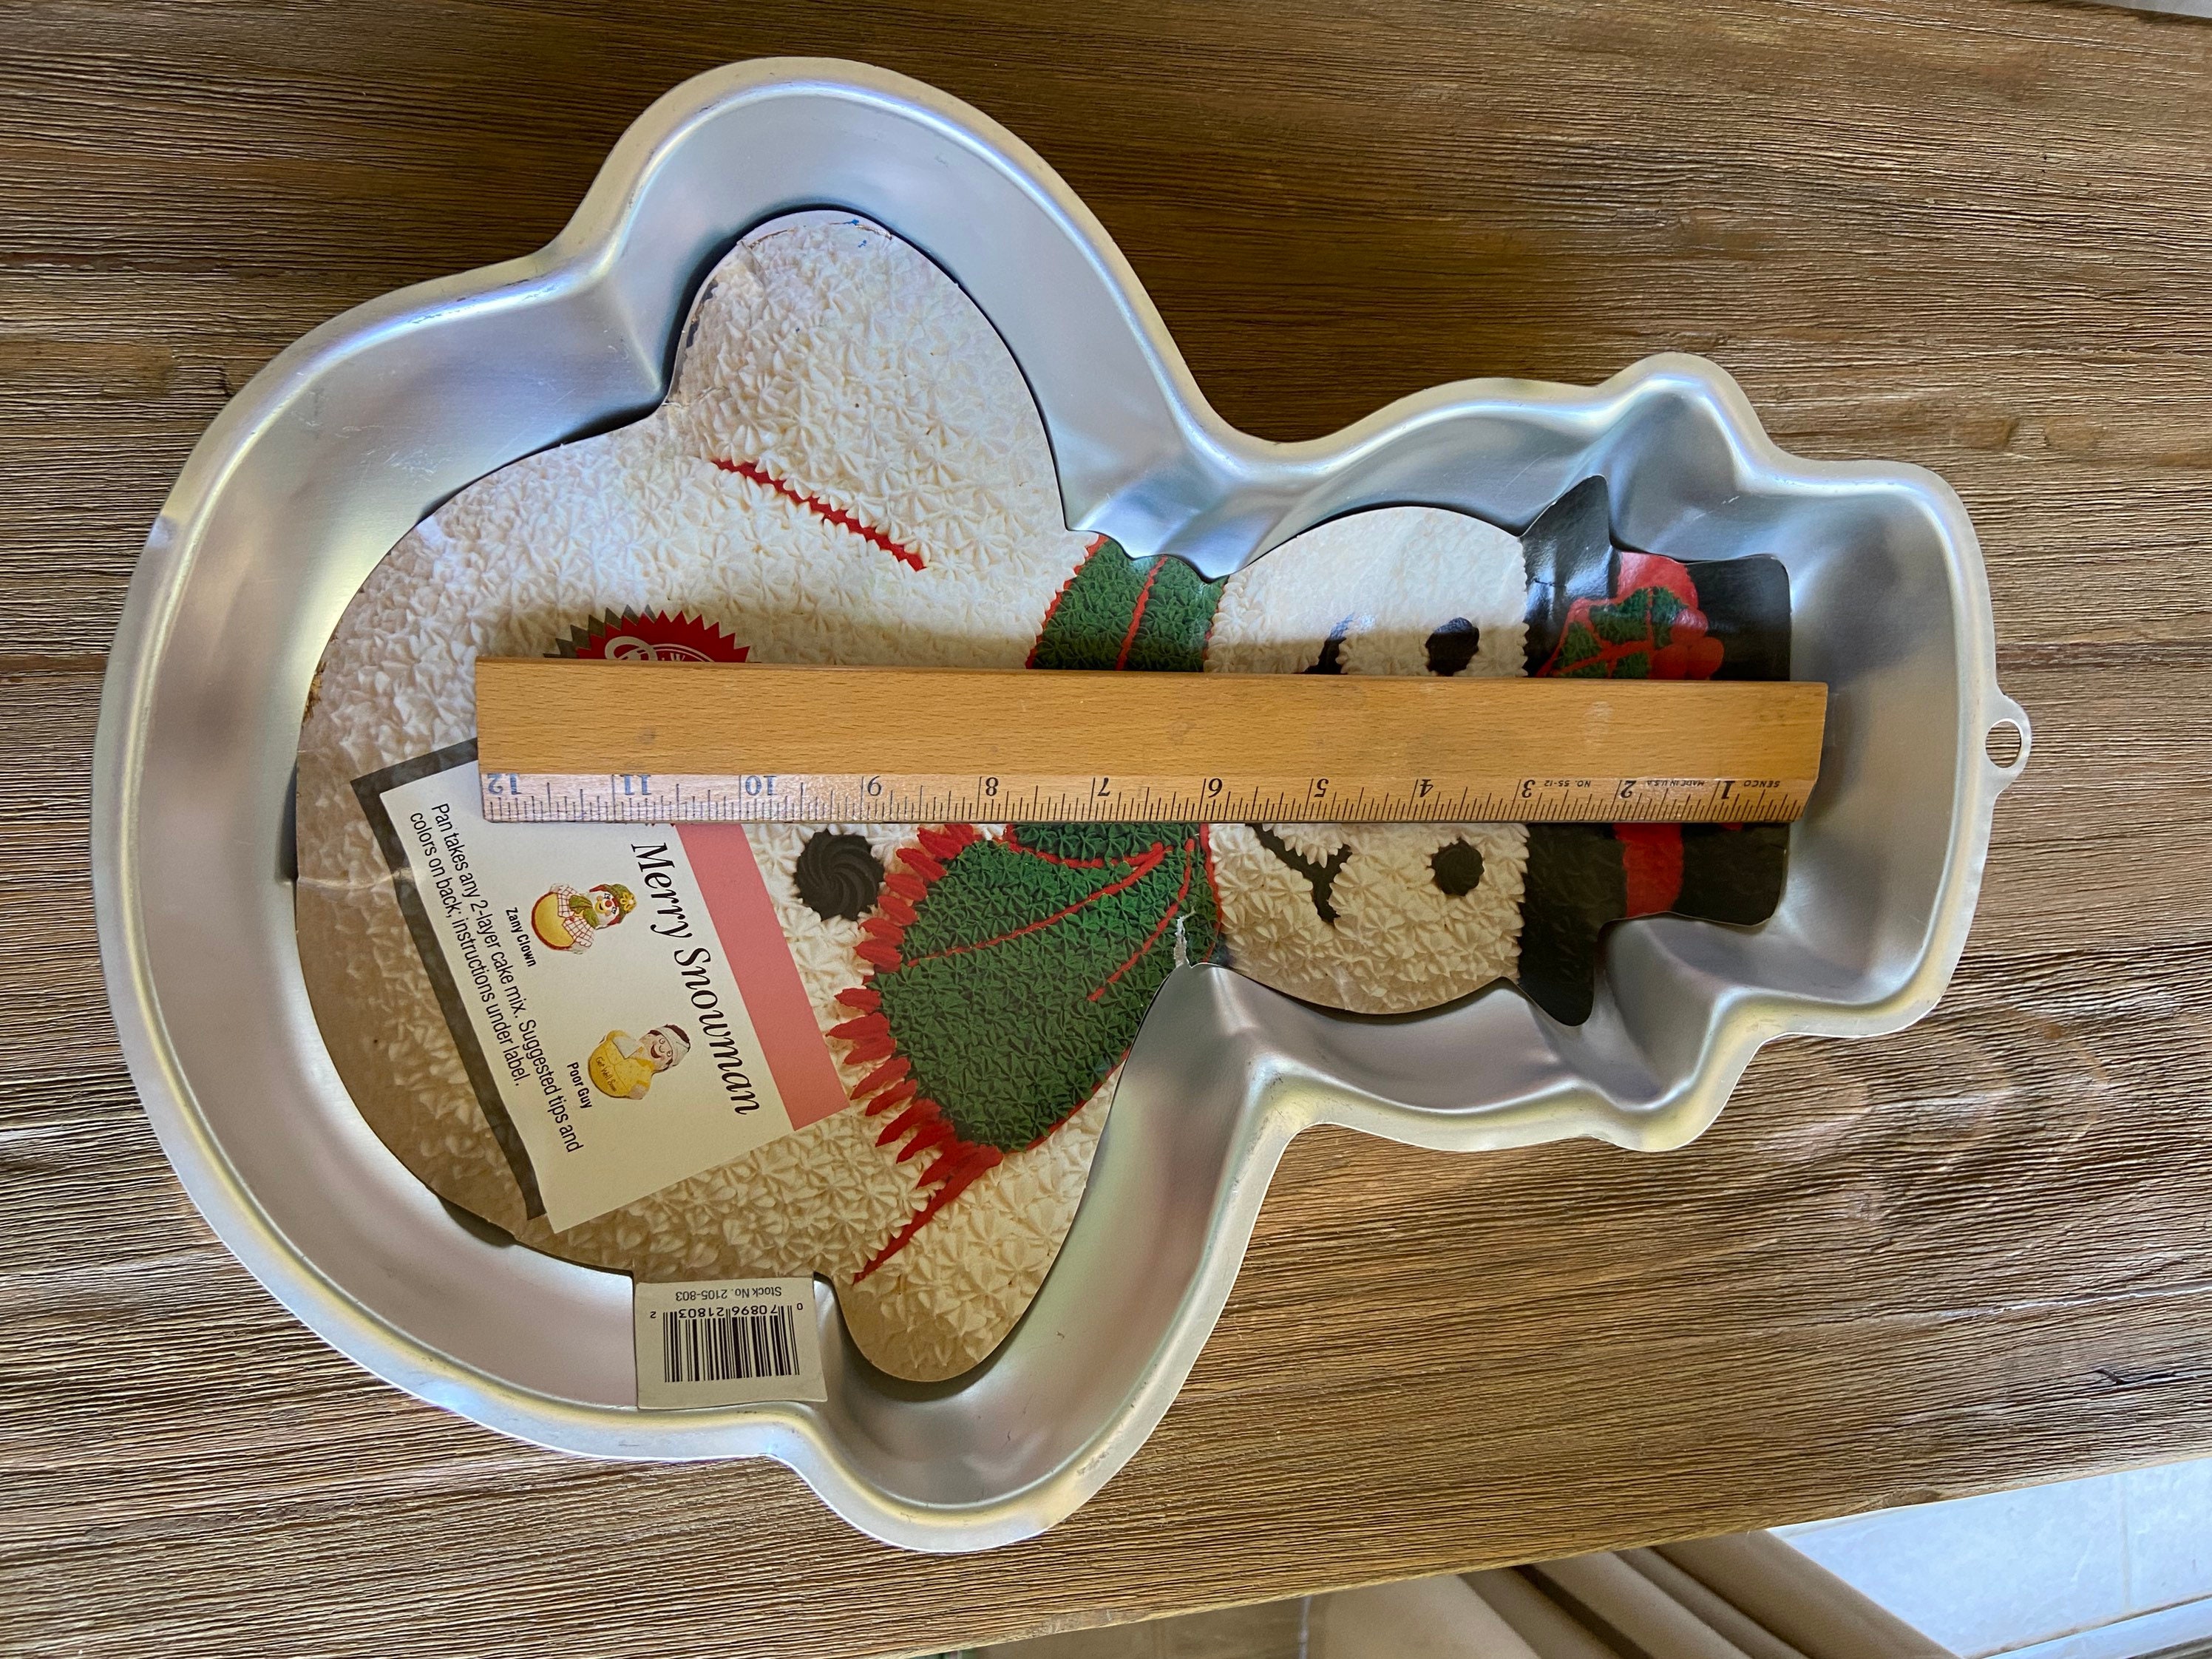 STÄDTER We love baking Snowman – 3D Cake pan